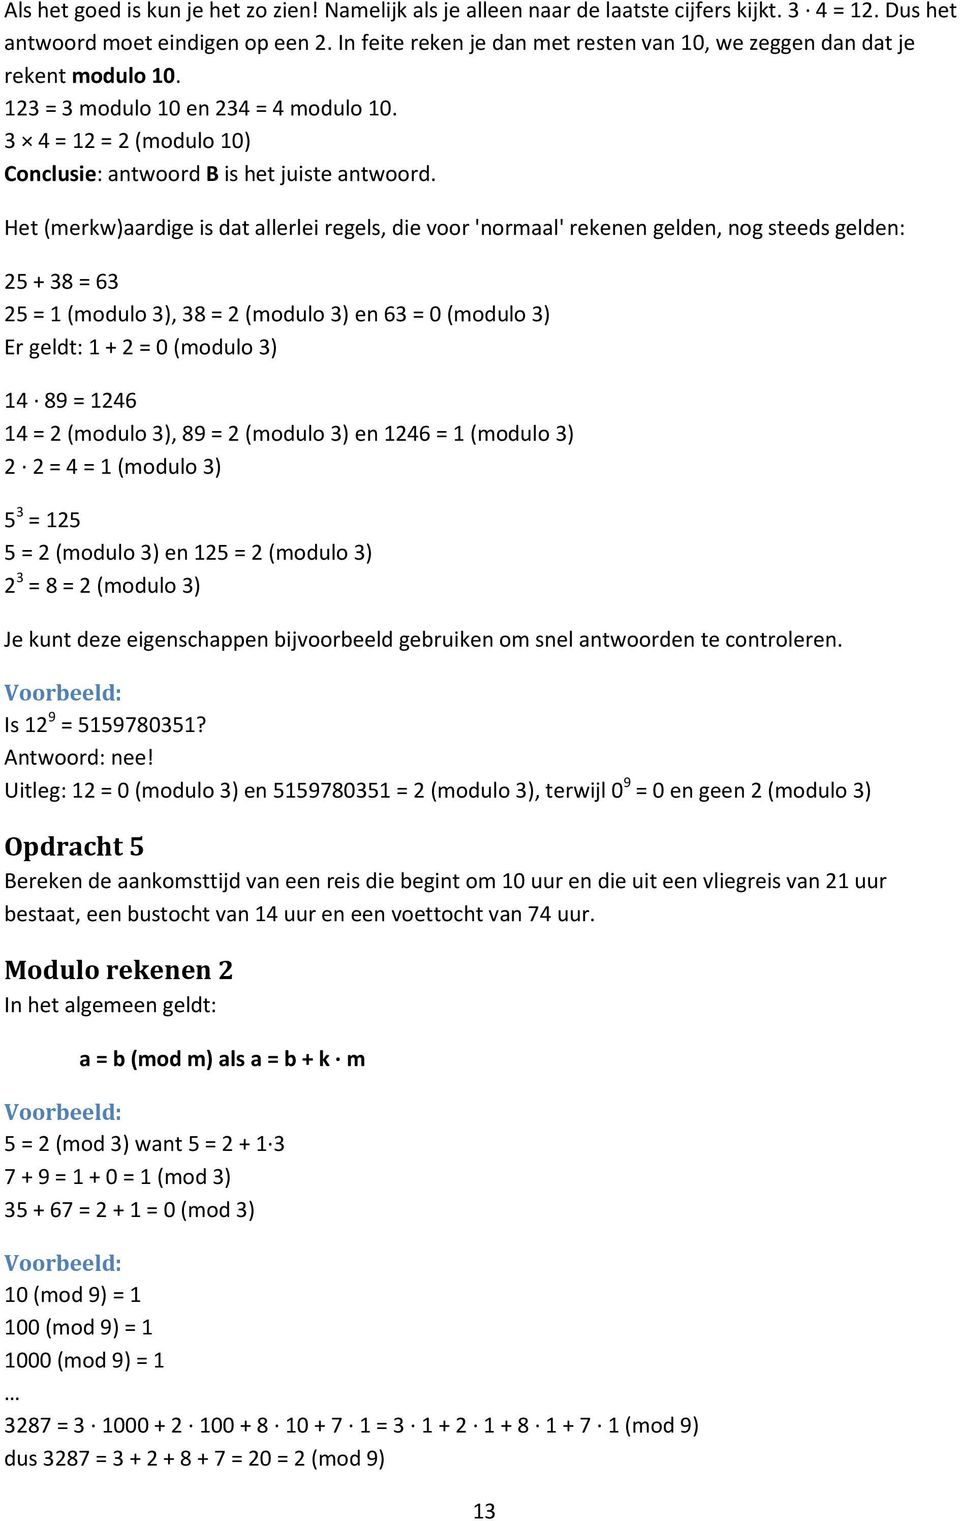 Het (merkw)aardige is dat allerlei regels, die voor 'normaal' rekenen gelden, nog steeds gelden: 5 + 38 = 63 5 = (modulo 3), 38 = (modulo 3) en 63 = 0 (modulo 3) Er geldt: + = 0 (modulo 3) 4 89 = 46